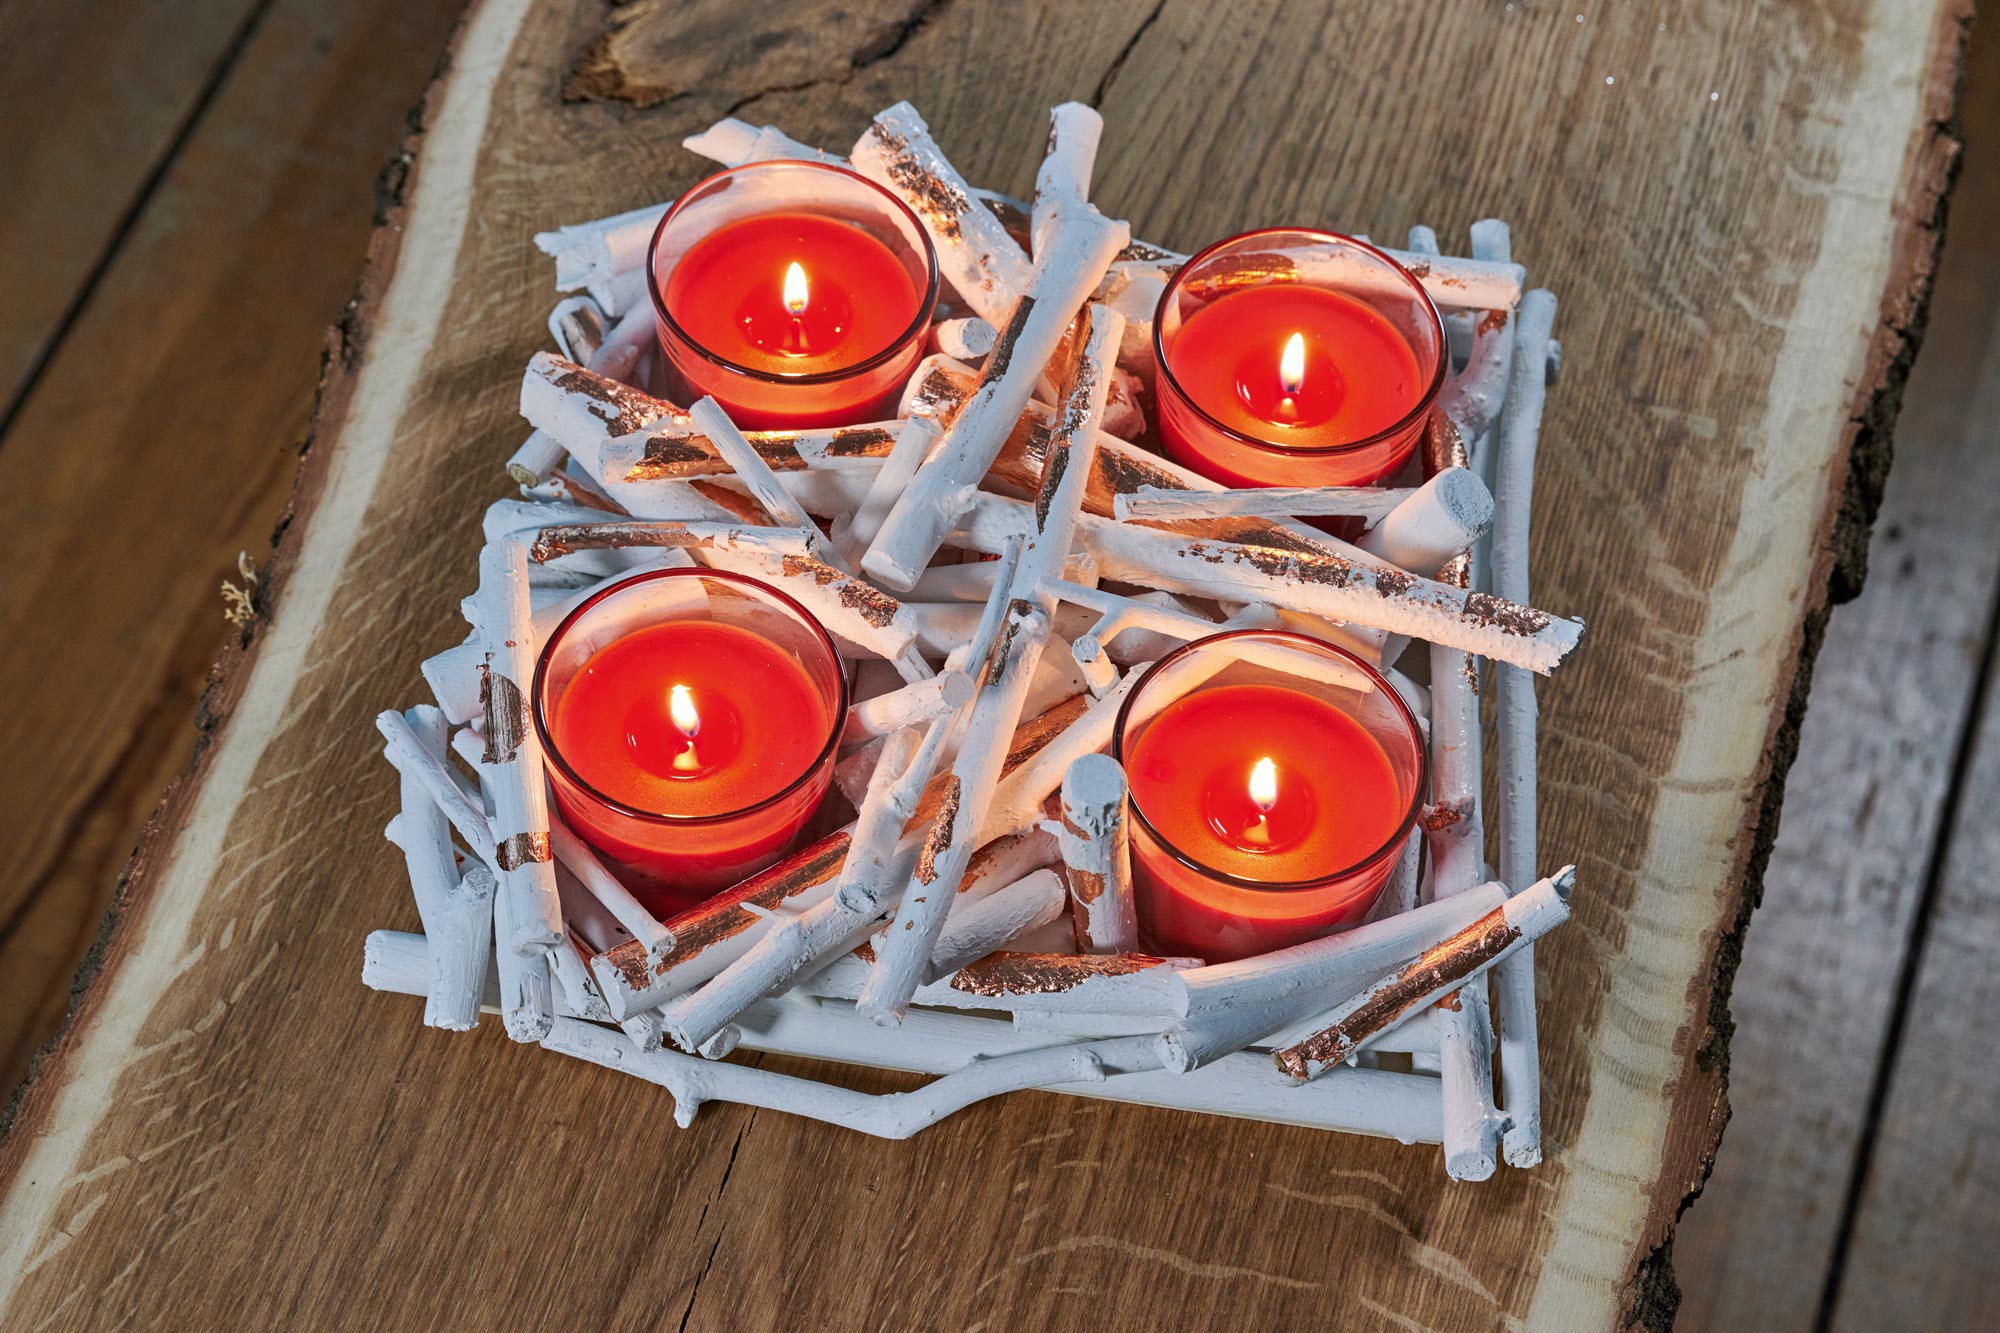 Vier rode kaarsen in glazen branden in een zelfgemaakte adventskrans van takjes